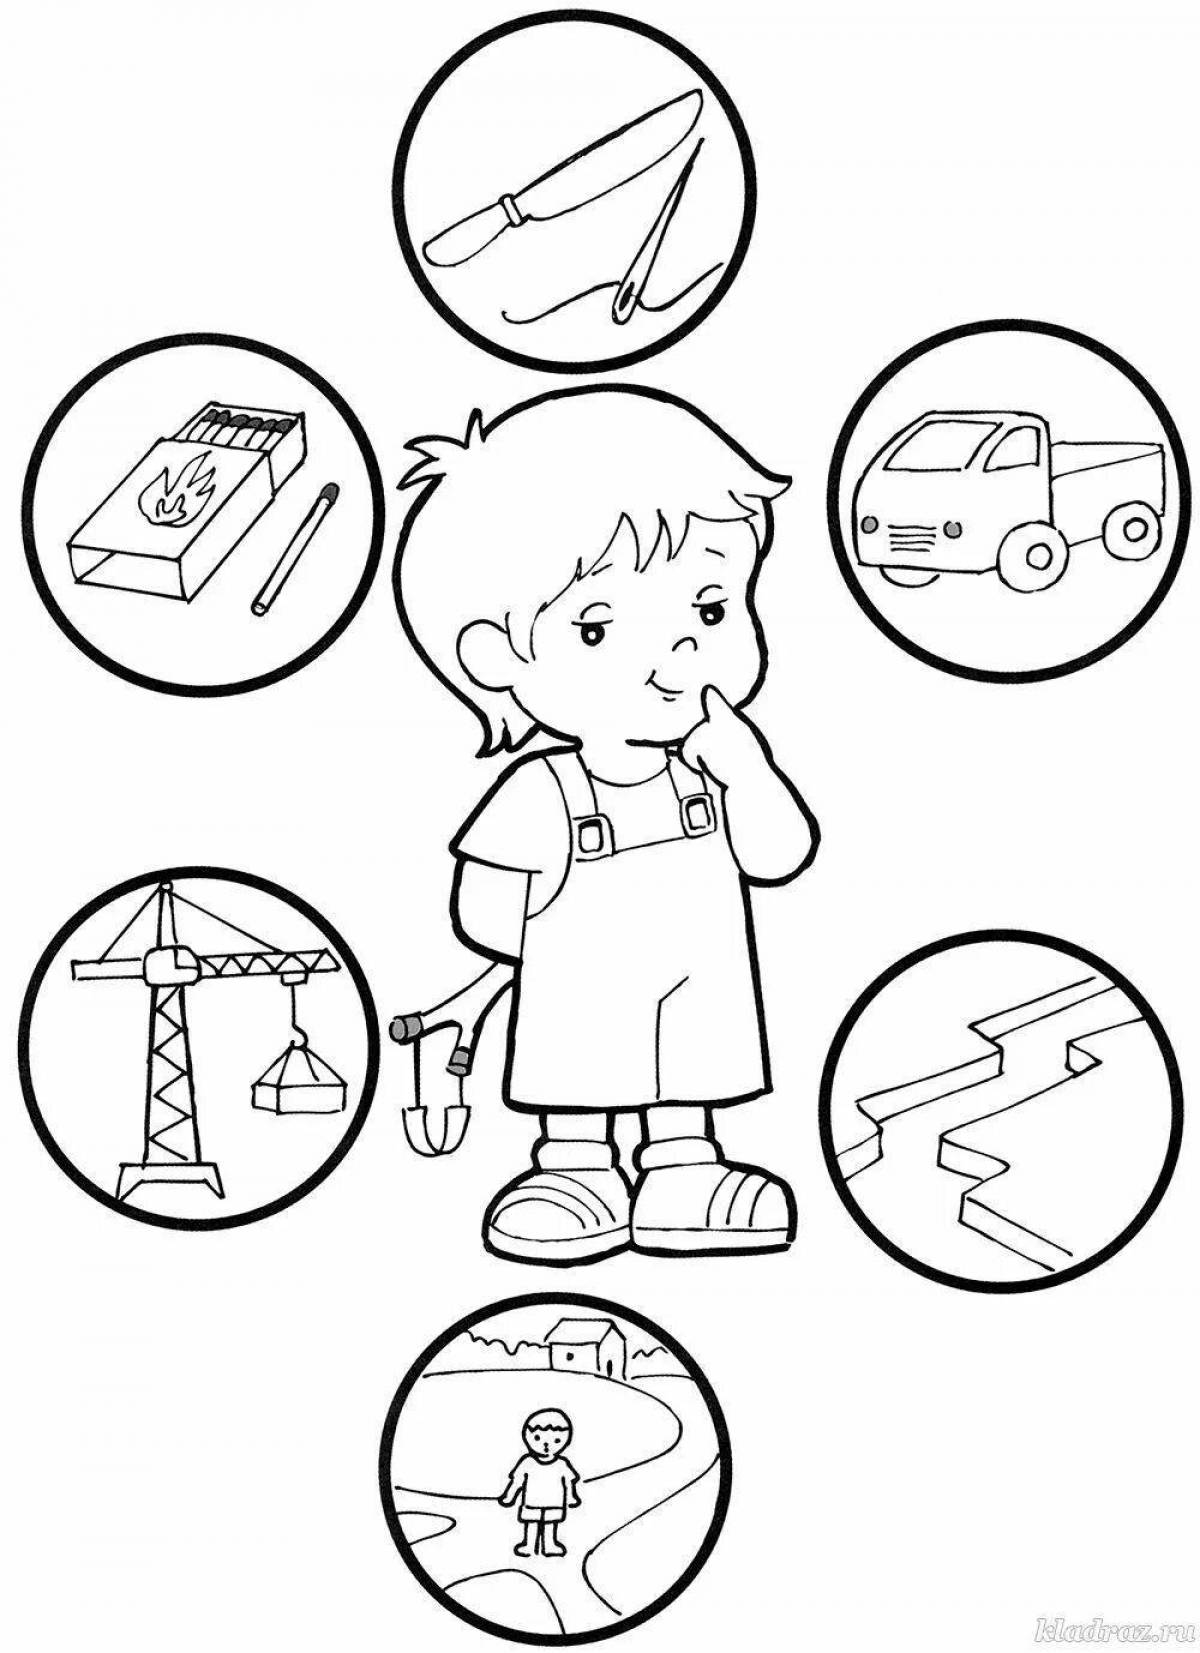 Kindergarten rules for children #14